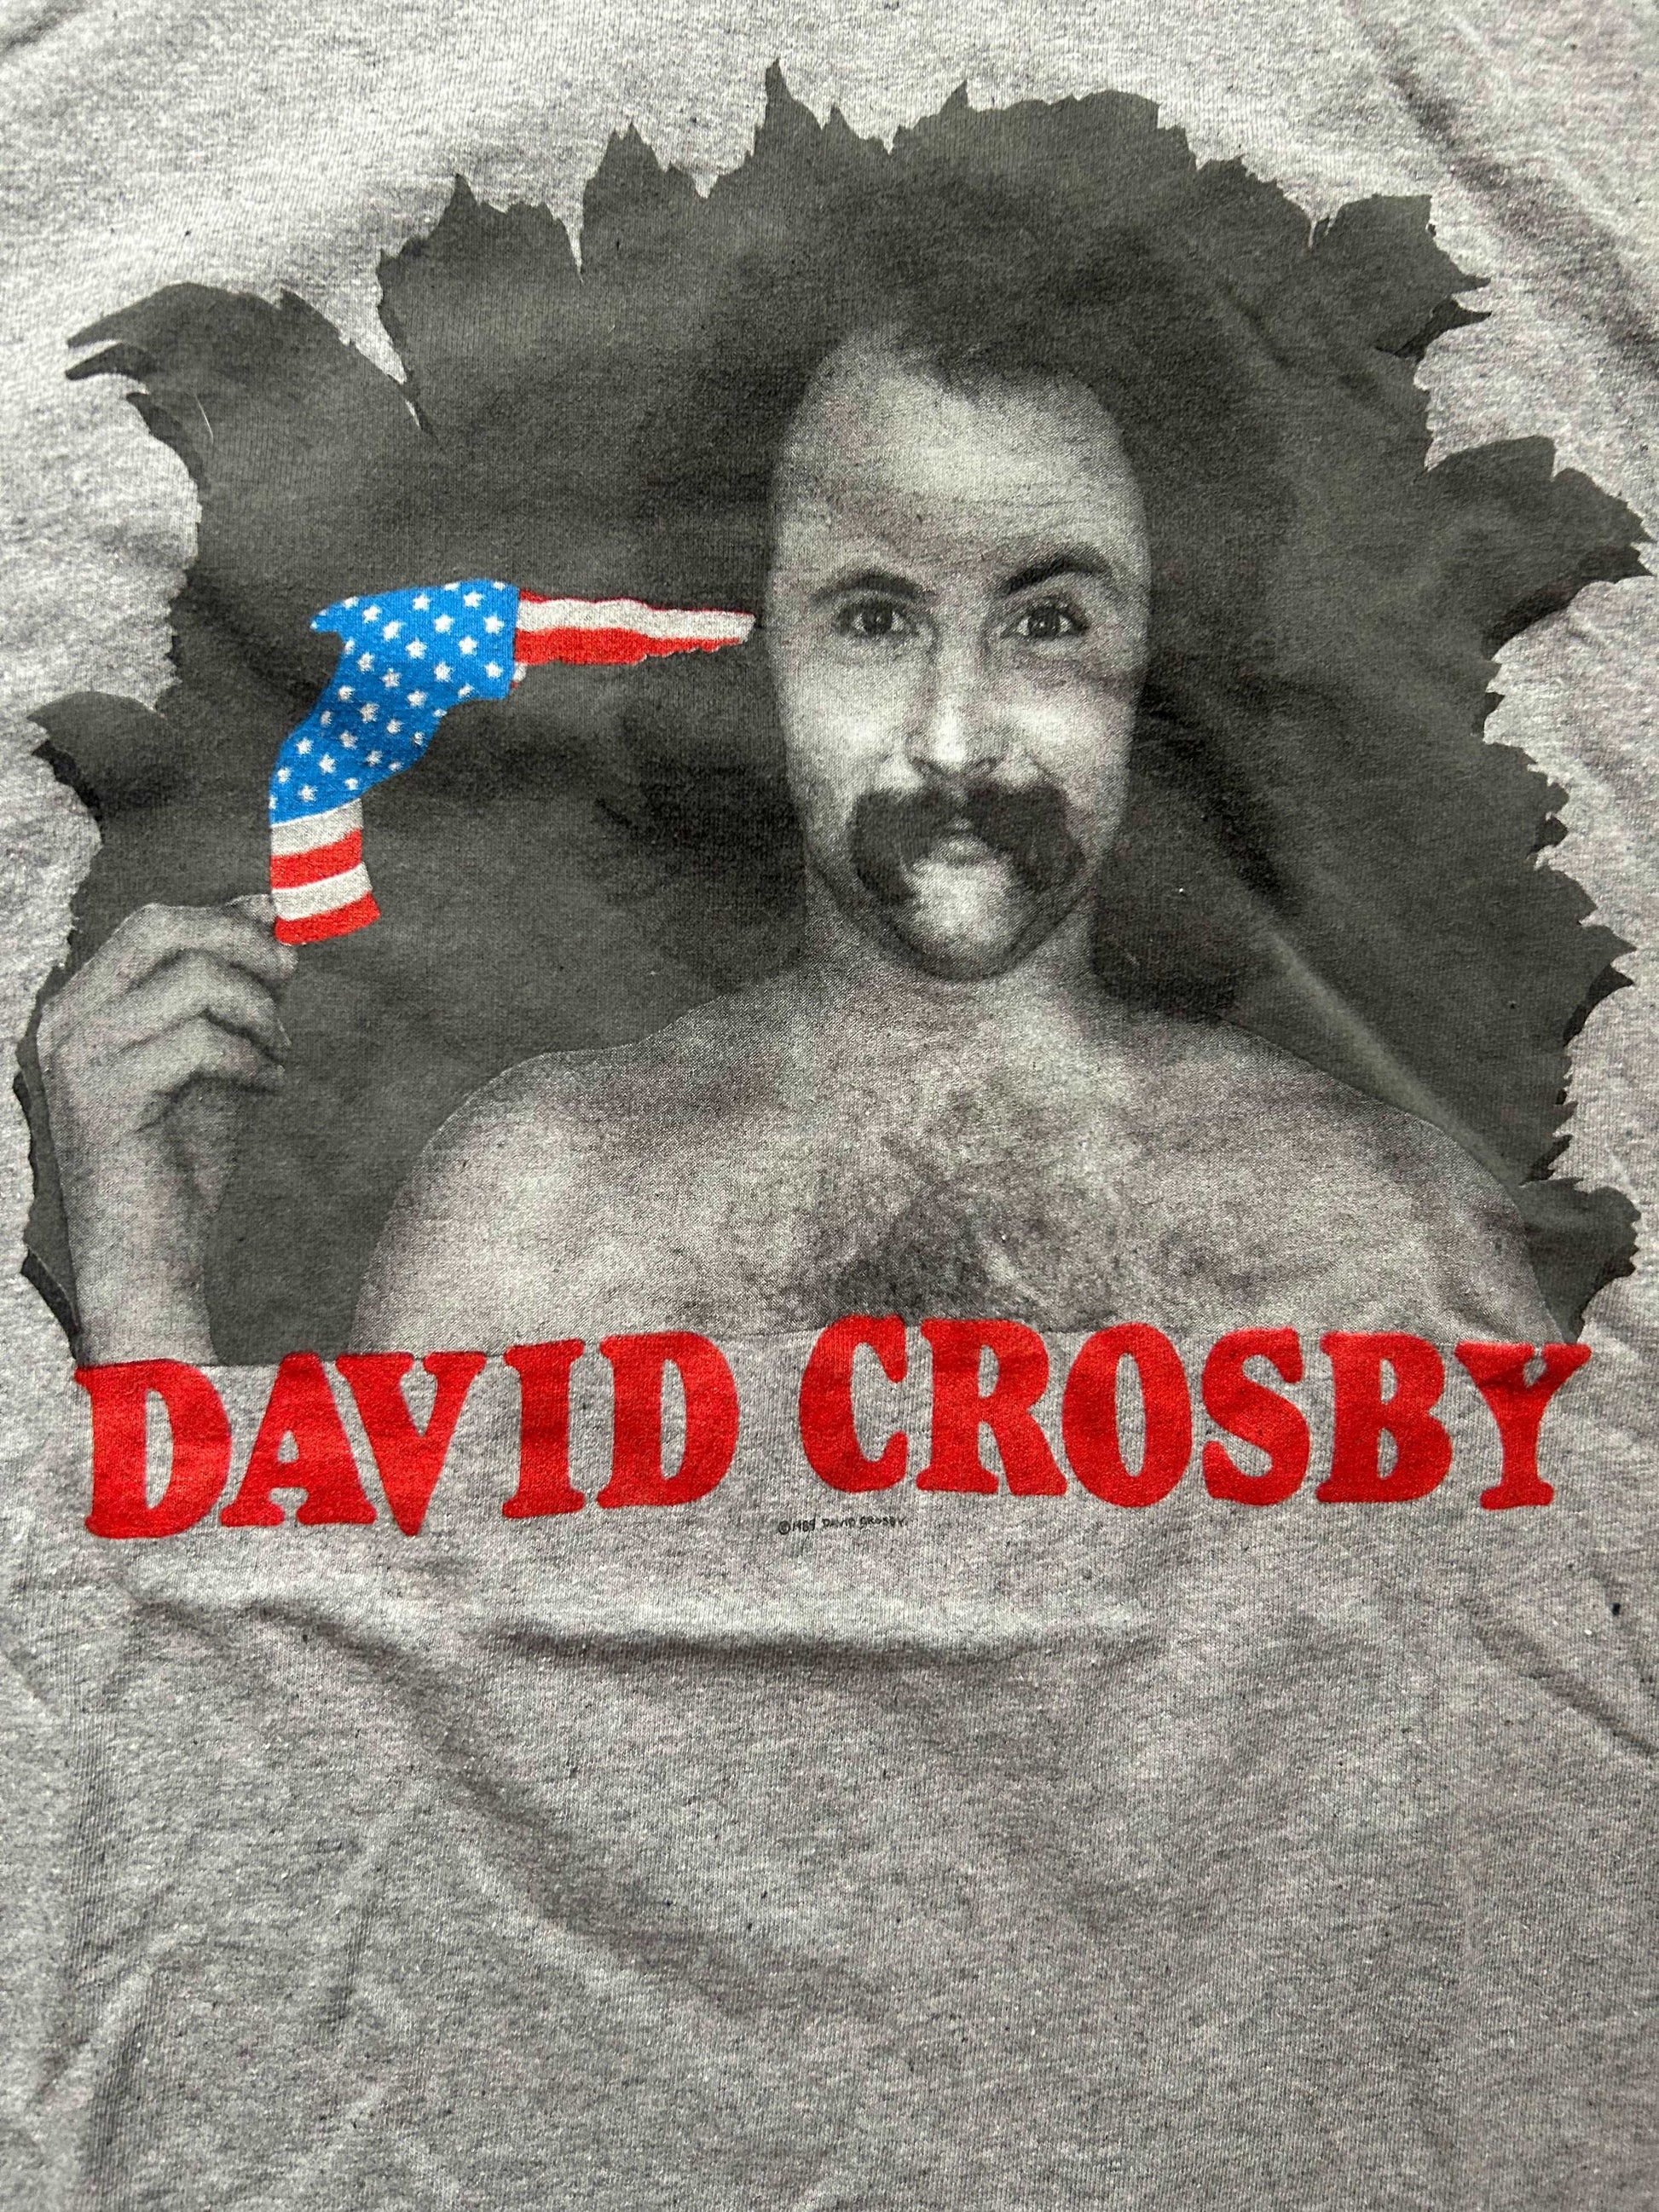 1989 David Crosby T Shirt Size - L